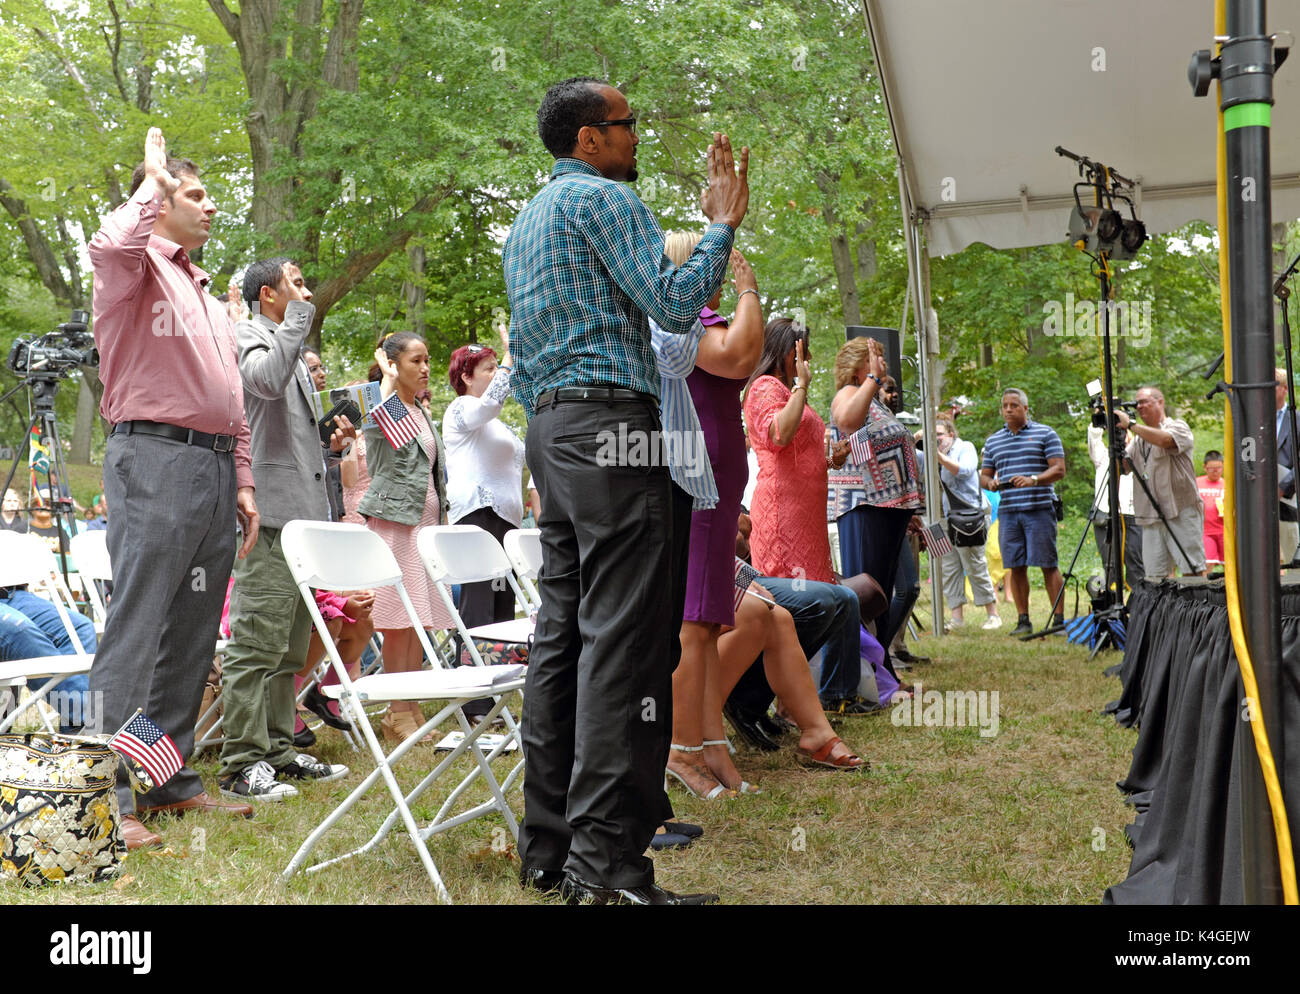 Outdoor Vereidigung cermony für neuen US-Bürger während der Einen Welt Maikundgebungen zum Tag der Arbeit im kulturellen Gärten von Cleveland, Ohio, USA Stockfoto